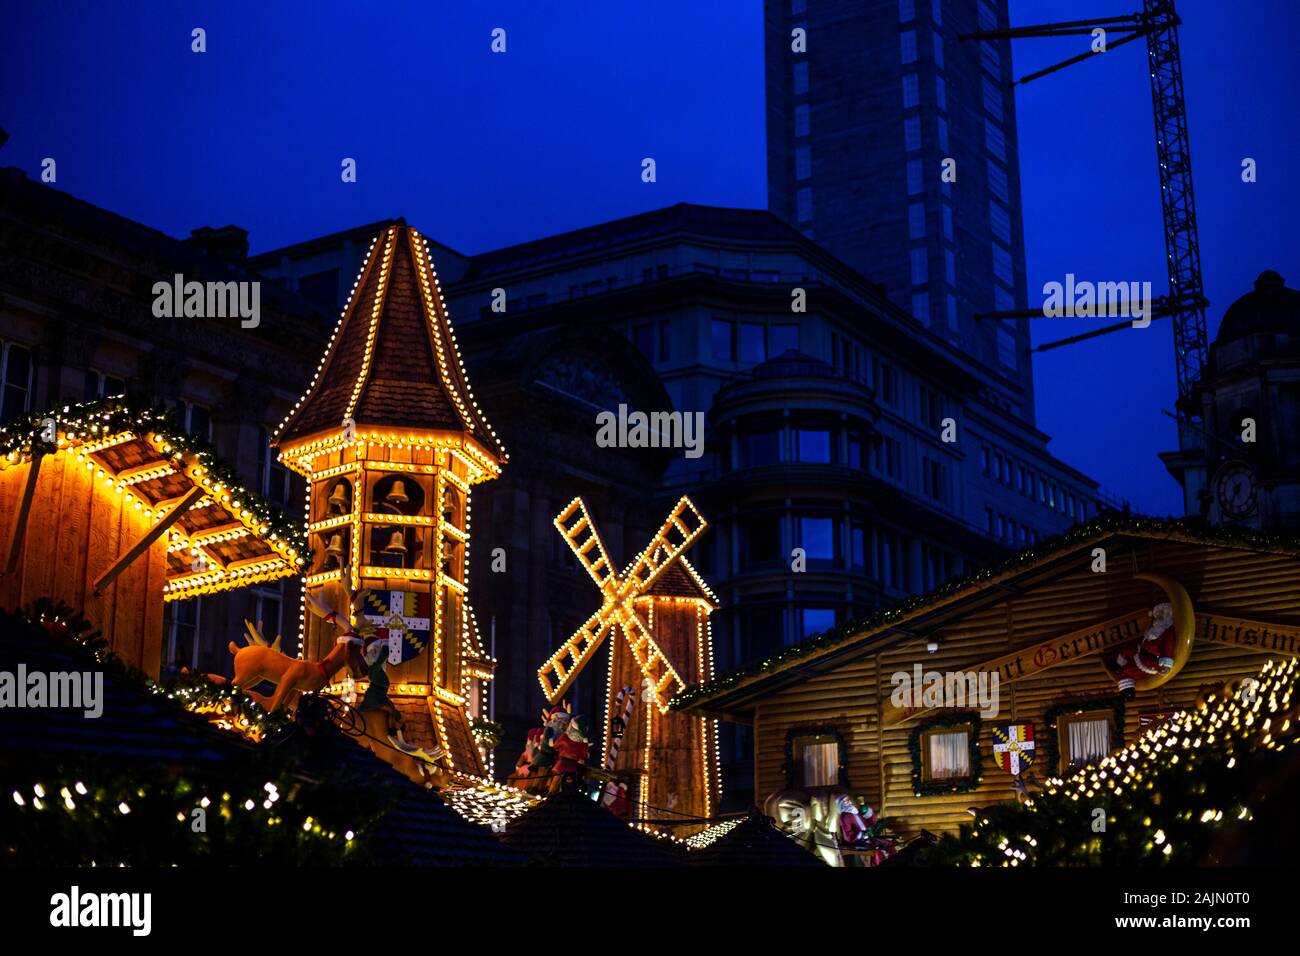 BIRMINGHAM, VEREINIGTES KÖNIGREICH - Dezember 15, 2019: Handel Marktstand gegen Gebäude und Dämmerung Himmel während der jährlichen Weihnachten Fraknkfurt Markt Stockfoto